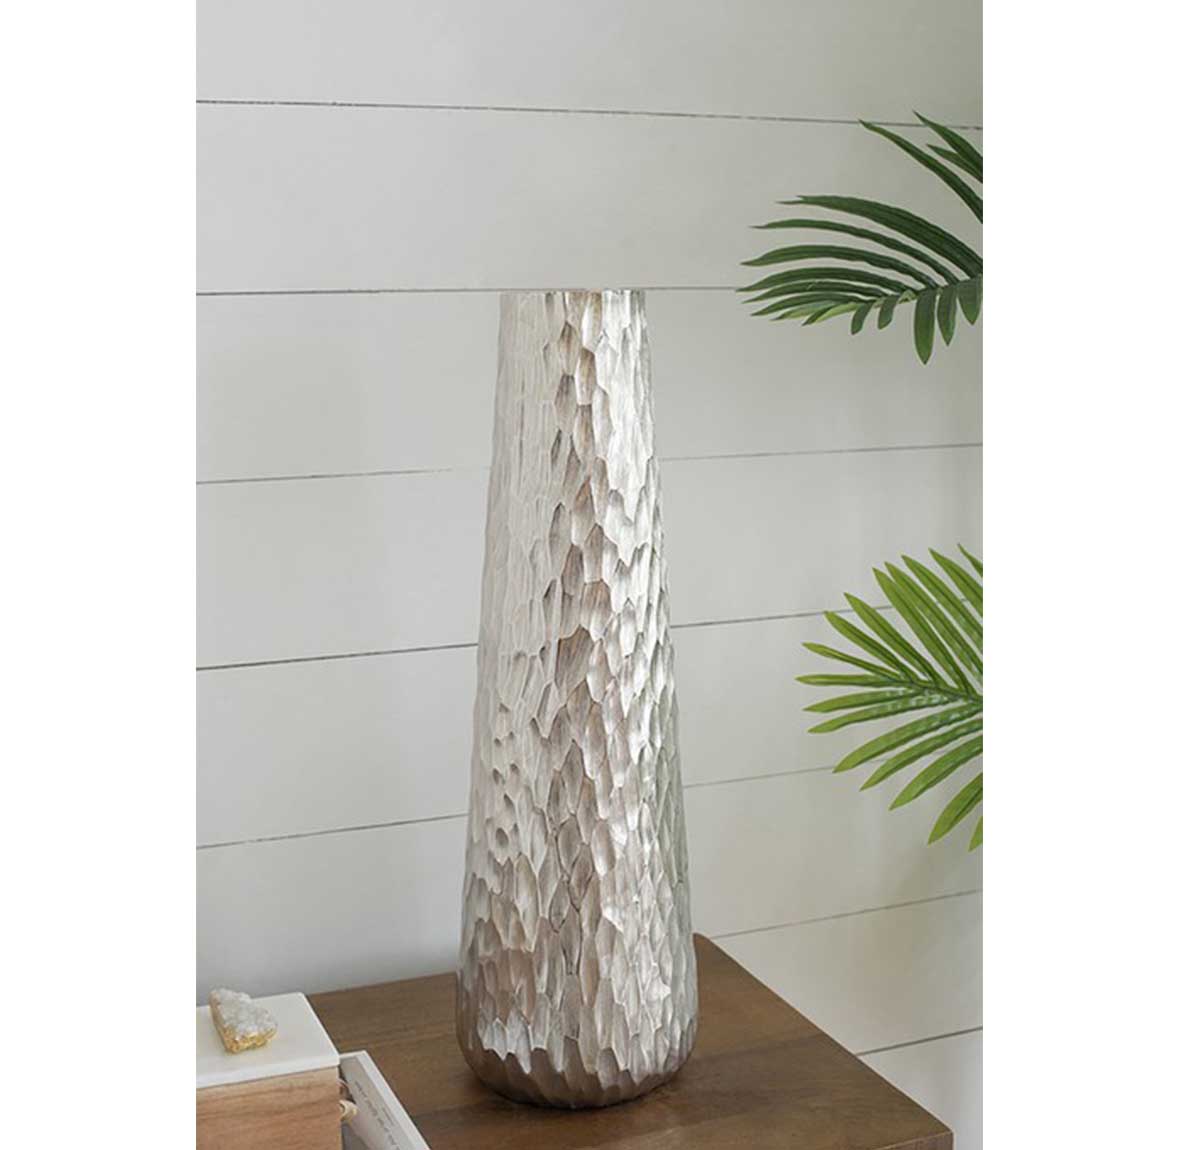 Diamond Textured Oblong Long Vase (59cm tall)